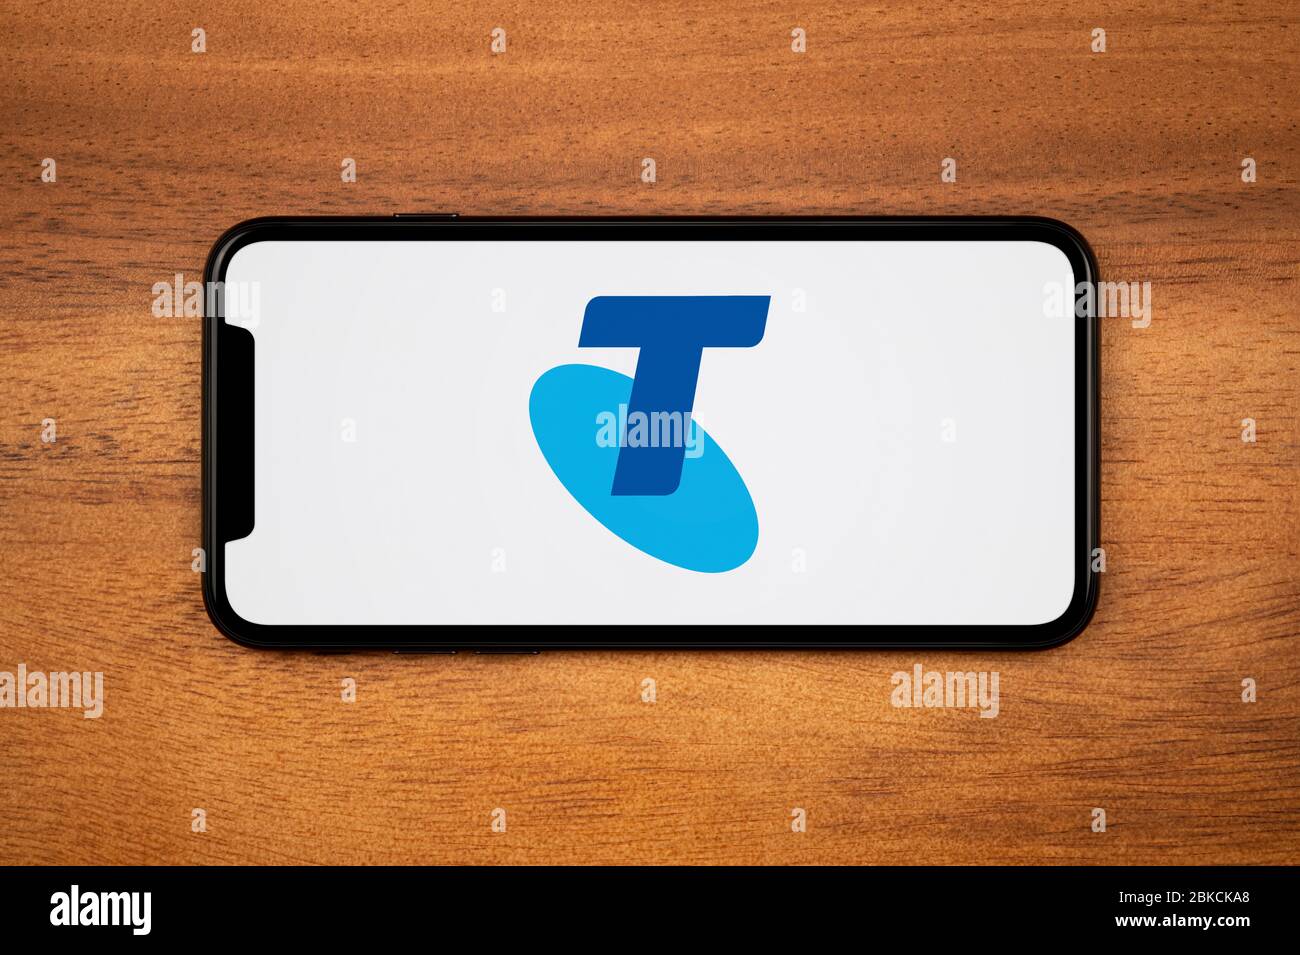 Un smartphone affichant le logo Telstra repose sur une table en bois ordinaire (usage éditorial uniquement). Banque D'Images